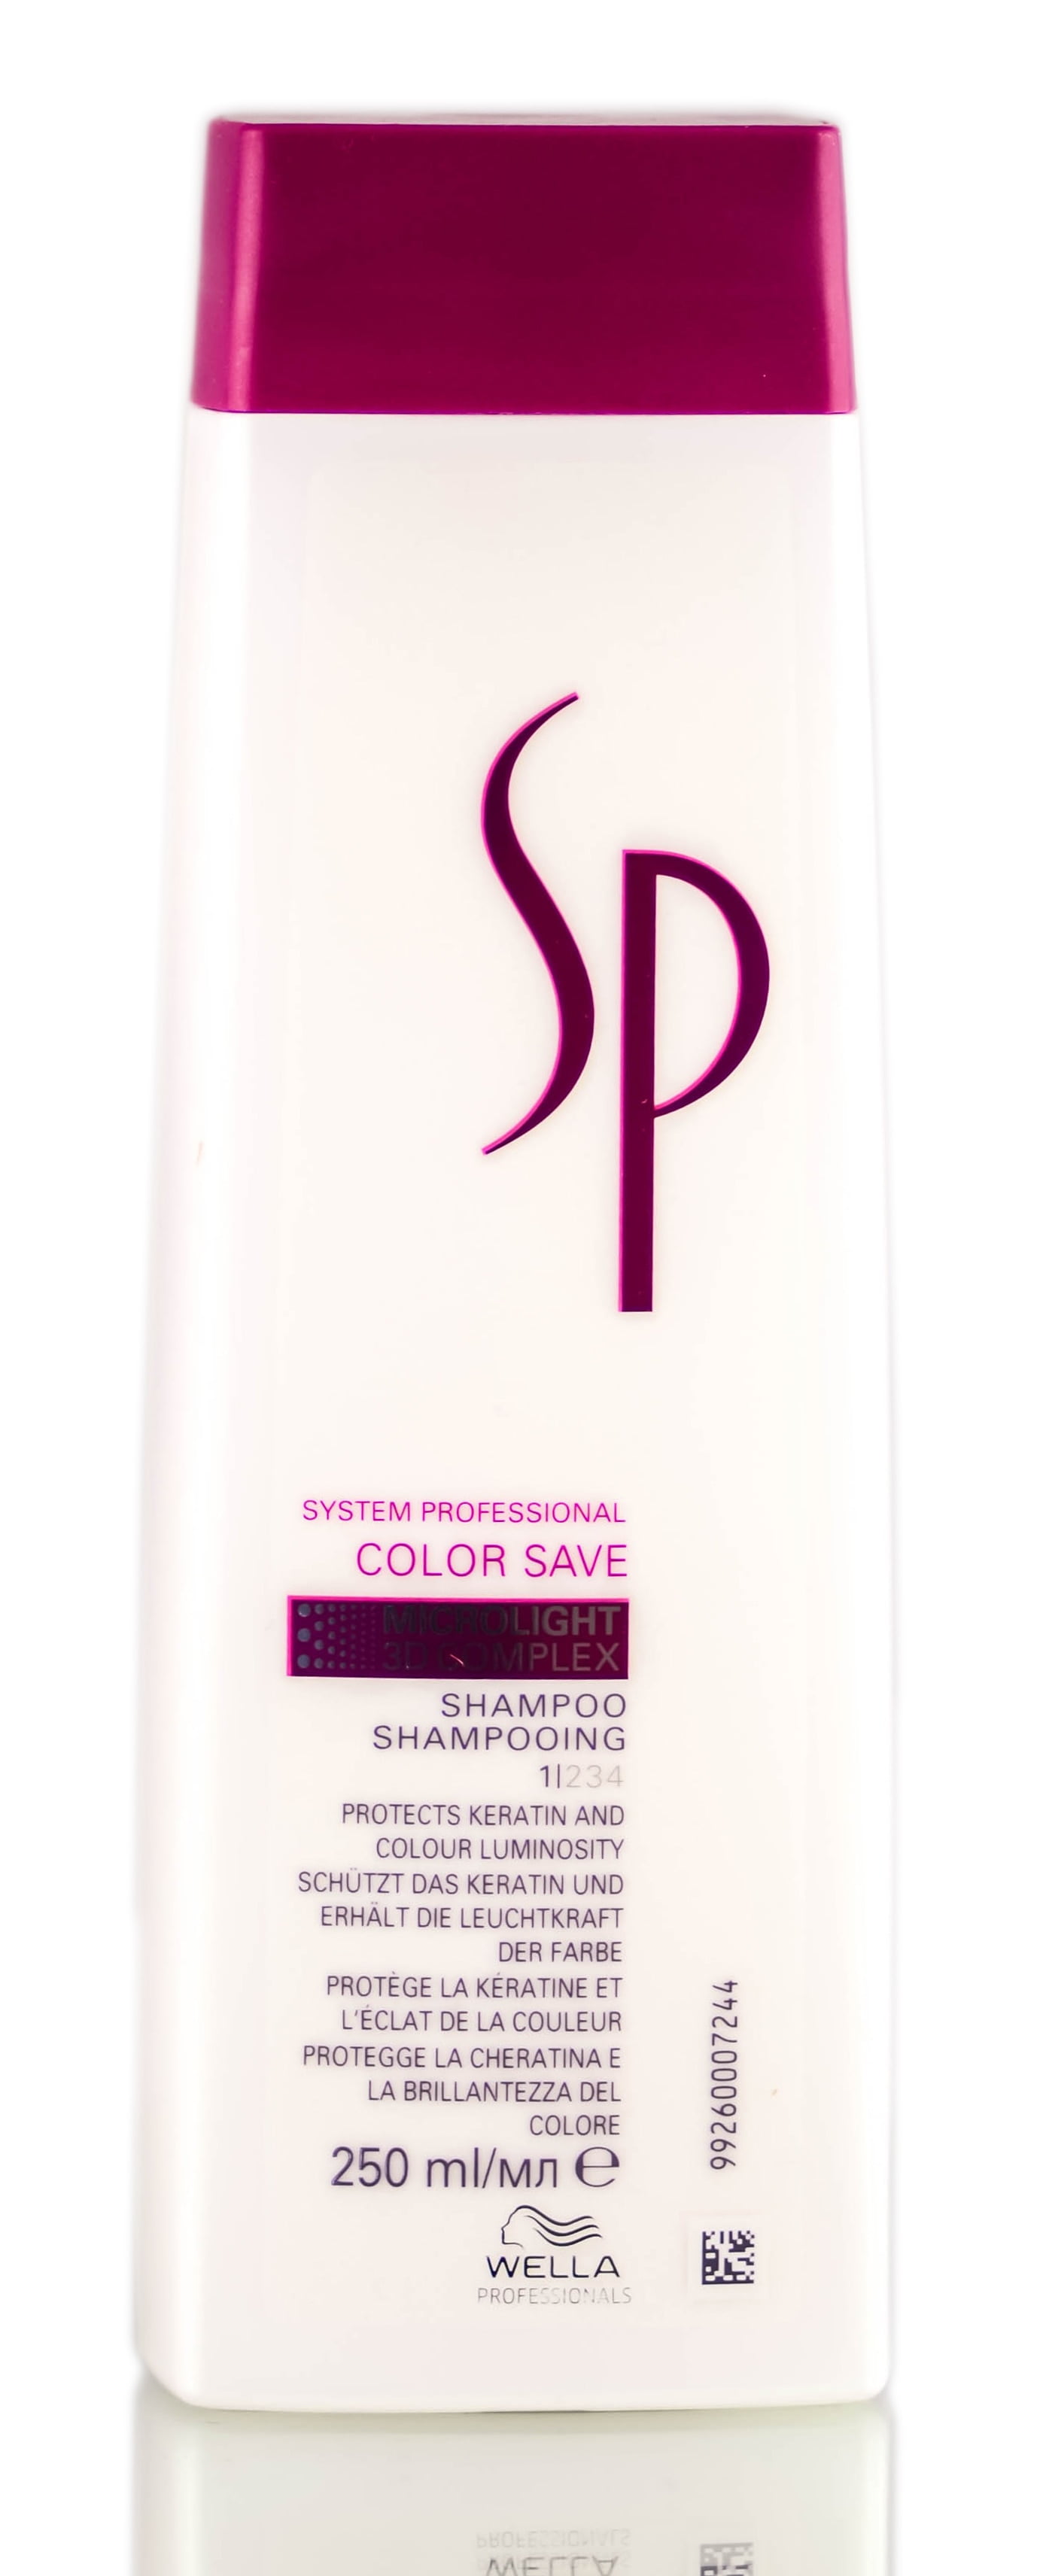 Spytte ud Alt det bedste aktivering 8.45 oz , Wella System Professional Color Save Shampoo , Hair Beauty  Product - Pack of 3 w/ Sleek Pin Comb - Walmart.com